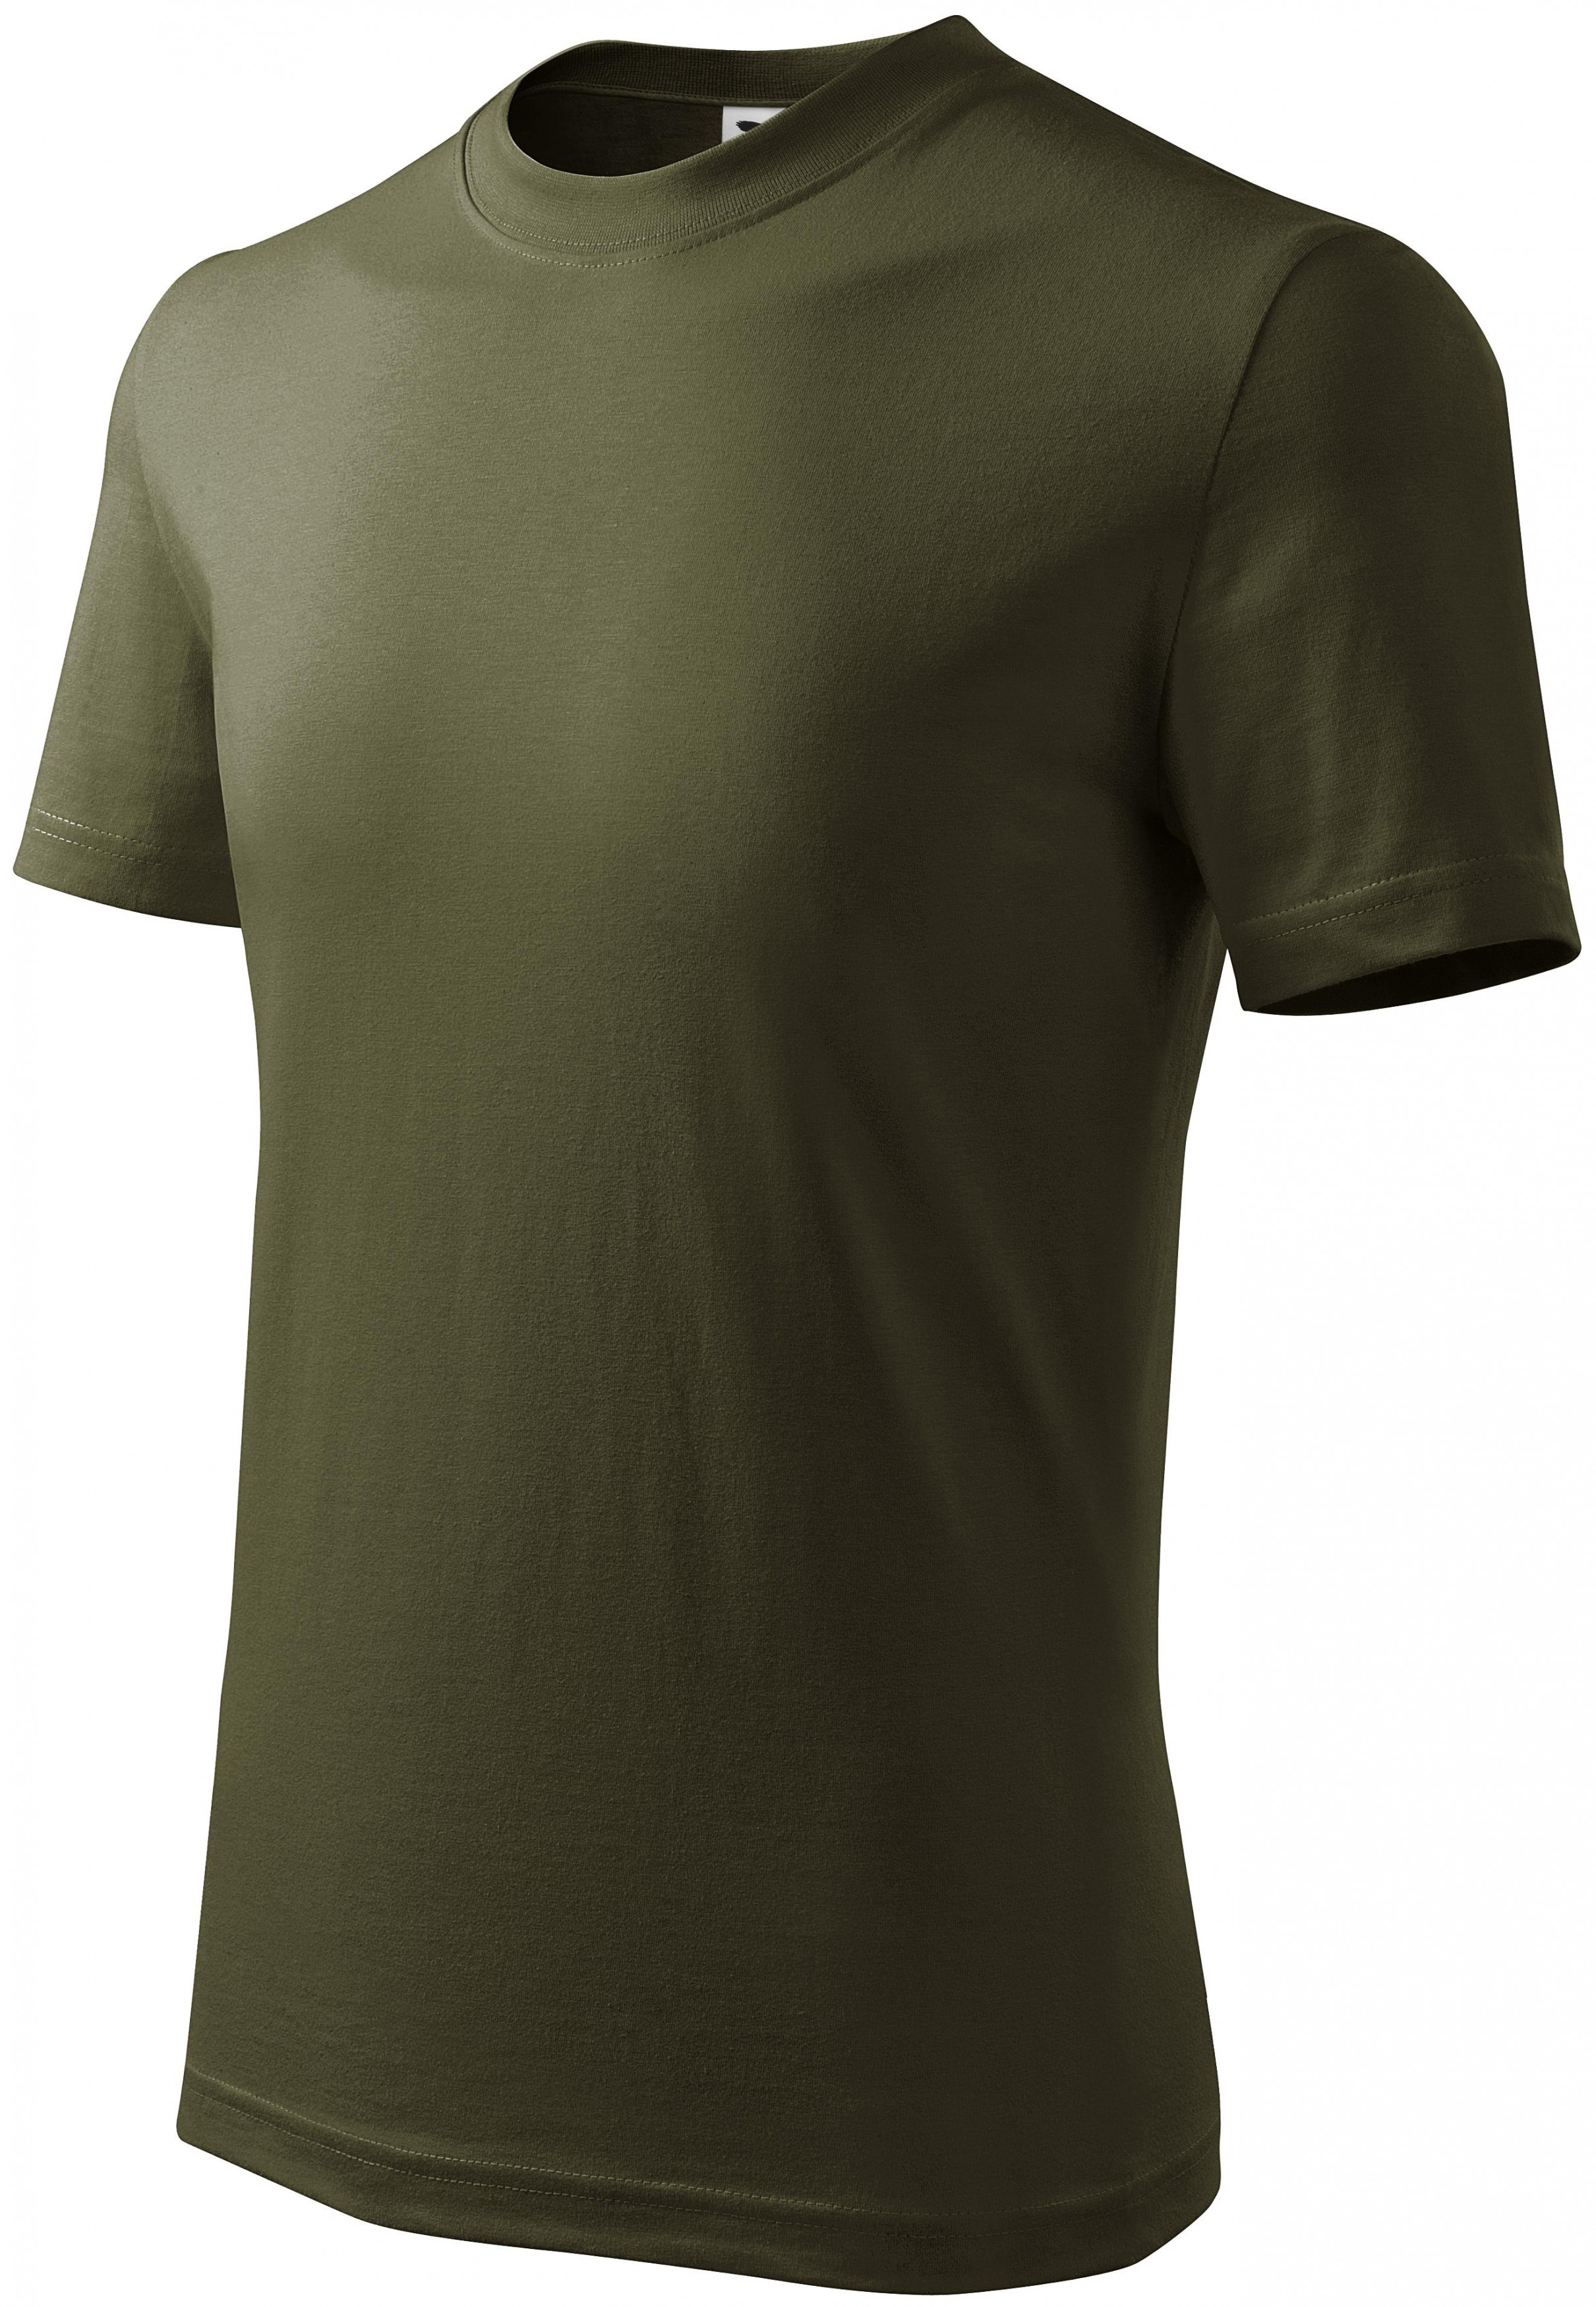 Detské tričko jednoduché, military, 134cm / 8rokov